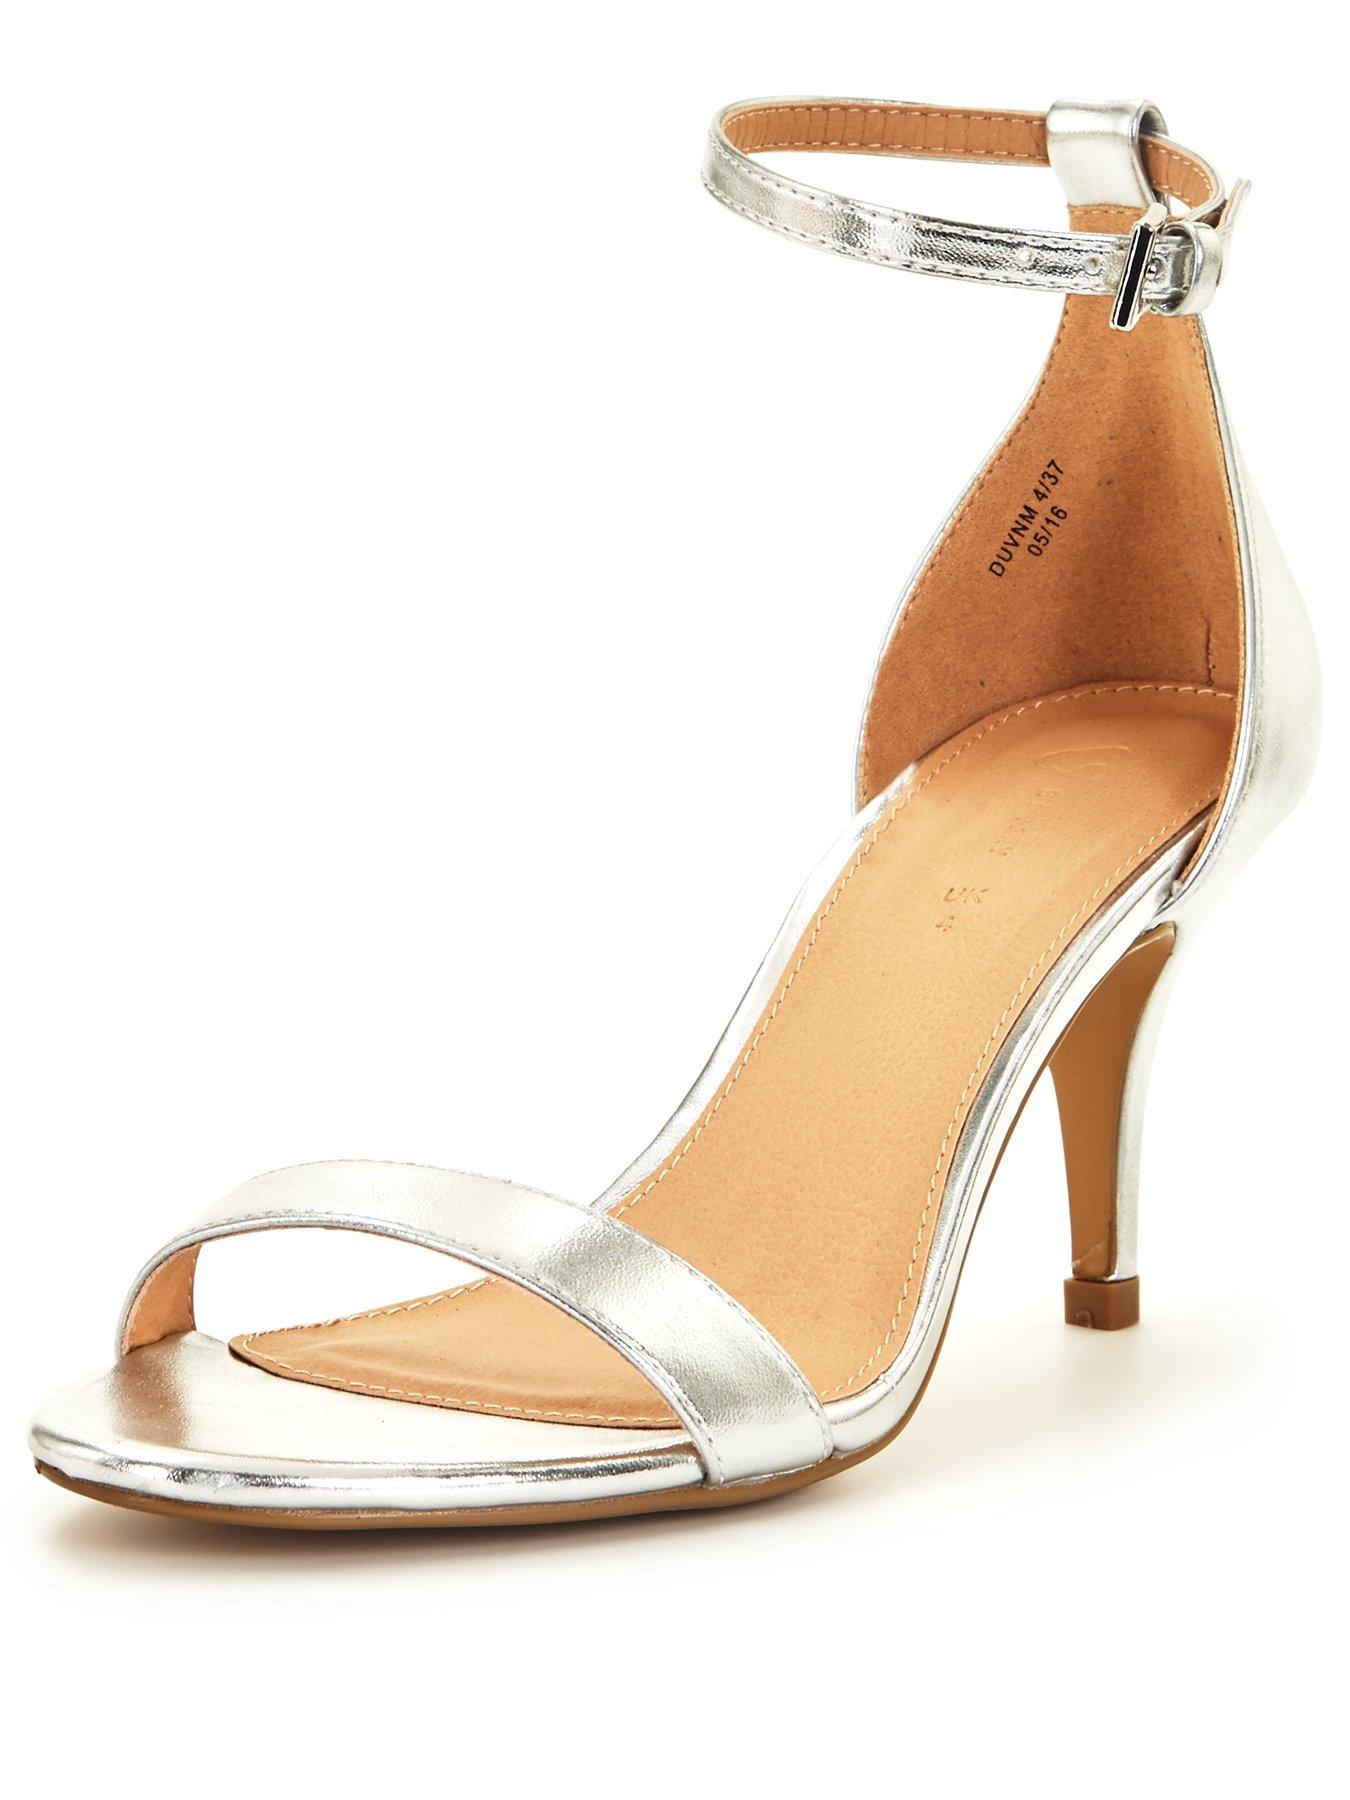 silver low heel sandals uk